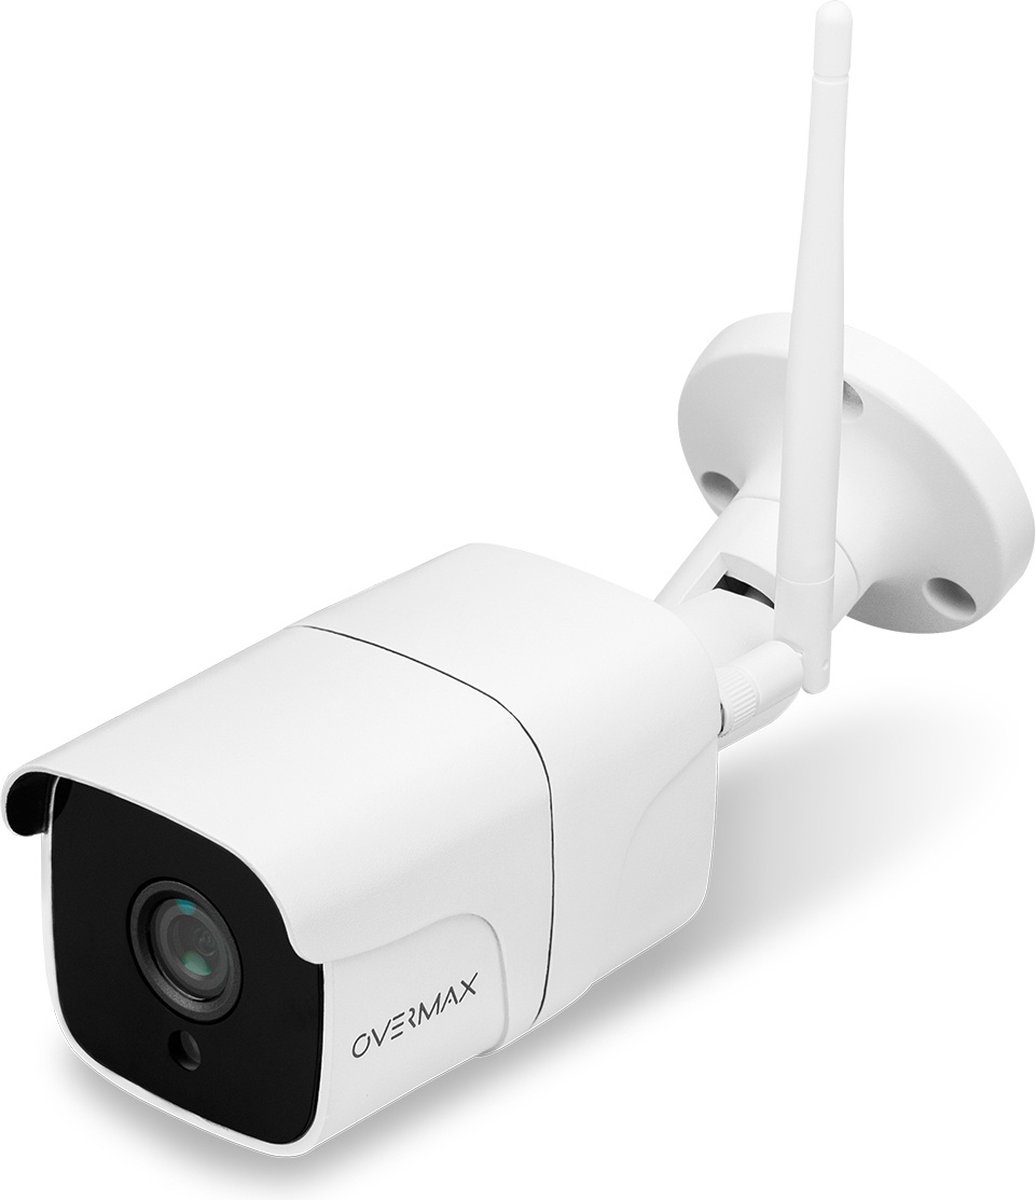 Overmax Camspot 4.7 One - IP-beveiligingscamera - Weerbestendig – IP66 norm - Hoge resolutie - Full HD - POE-adapter (Power over Ethernet)